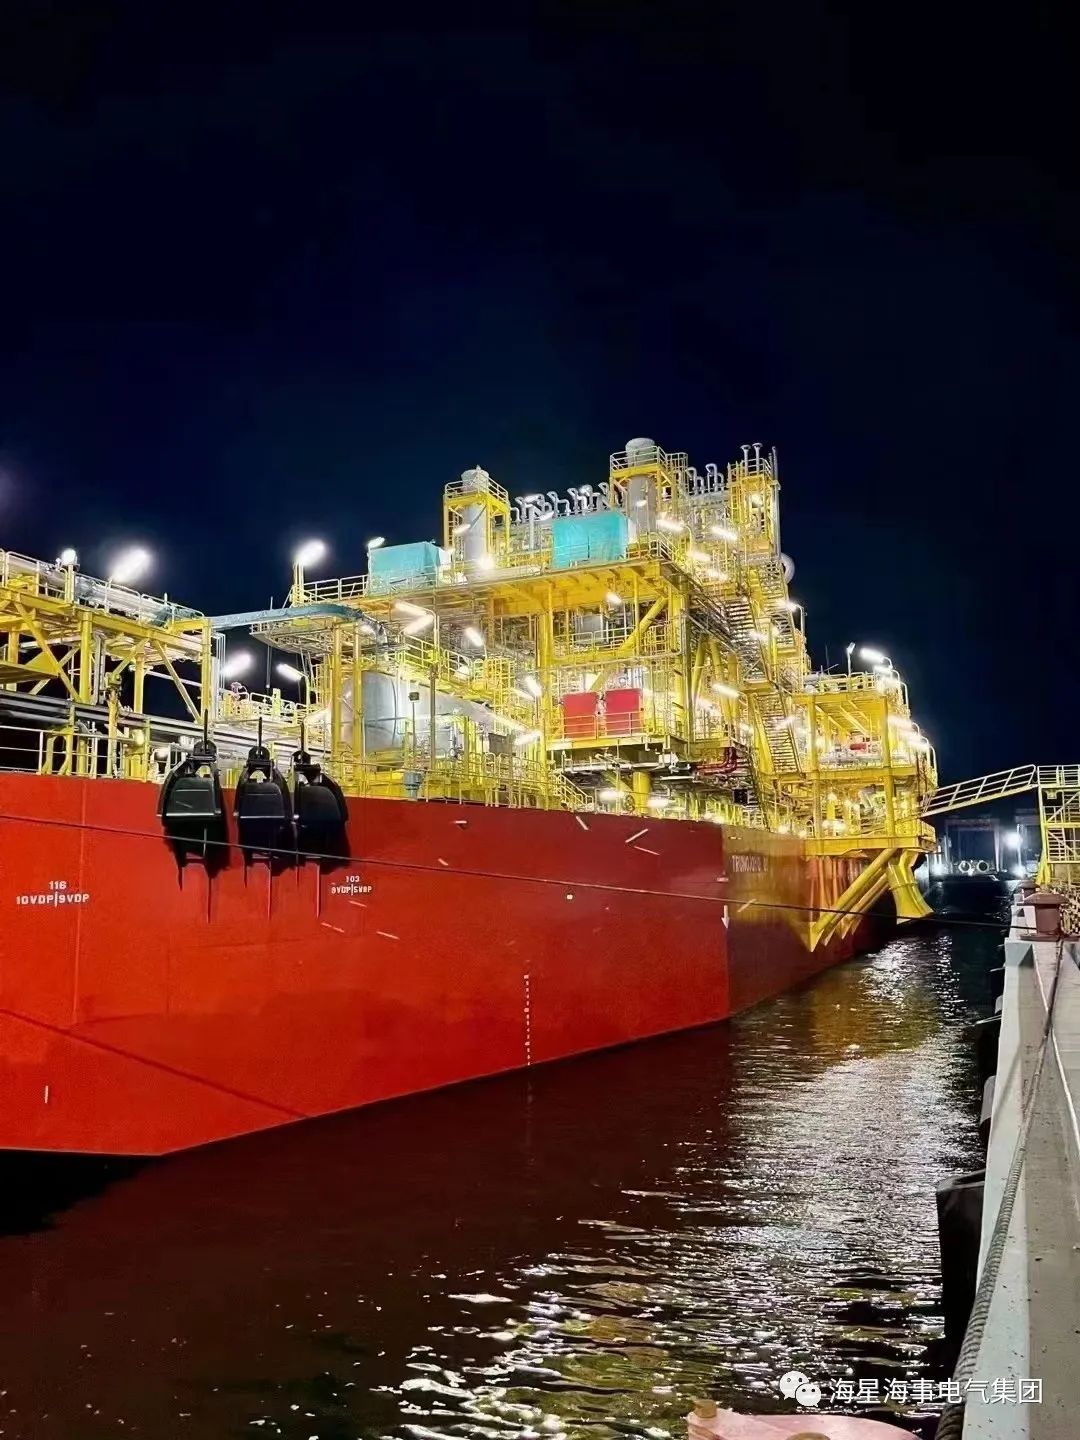 海星灯具助力国内民营企业首个海上浮式油气生产平台（FPU)“英雄1号”命名交